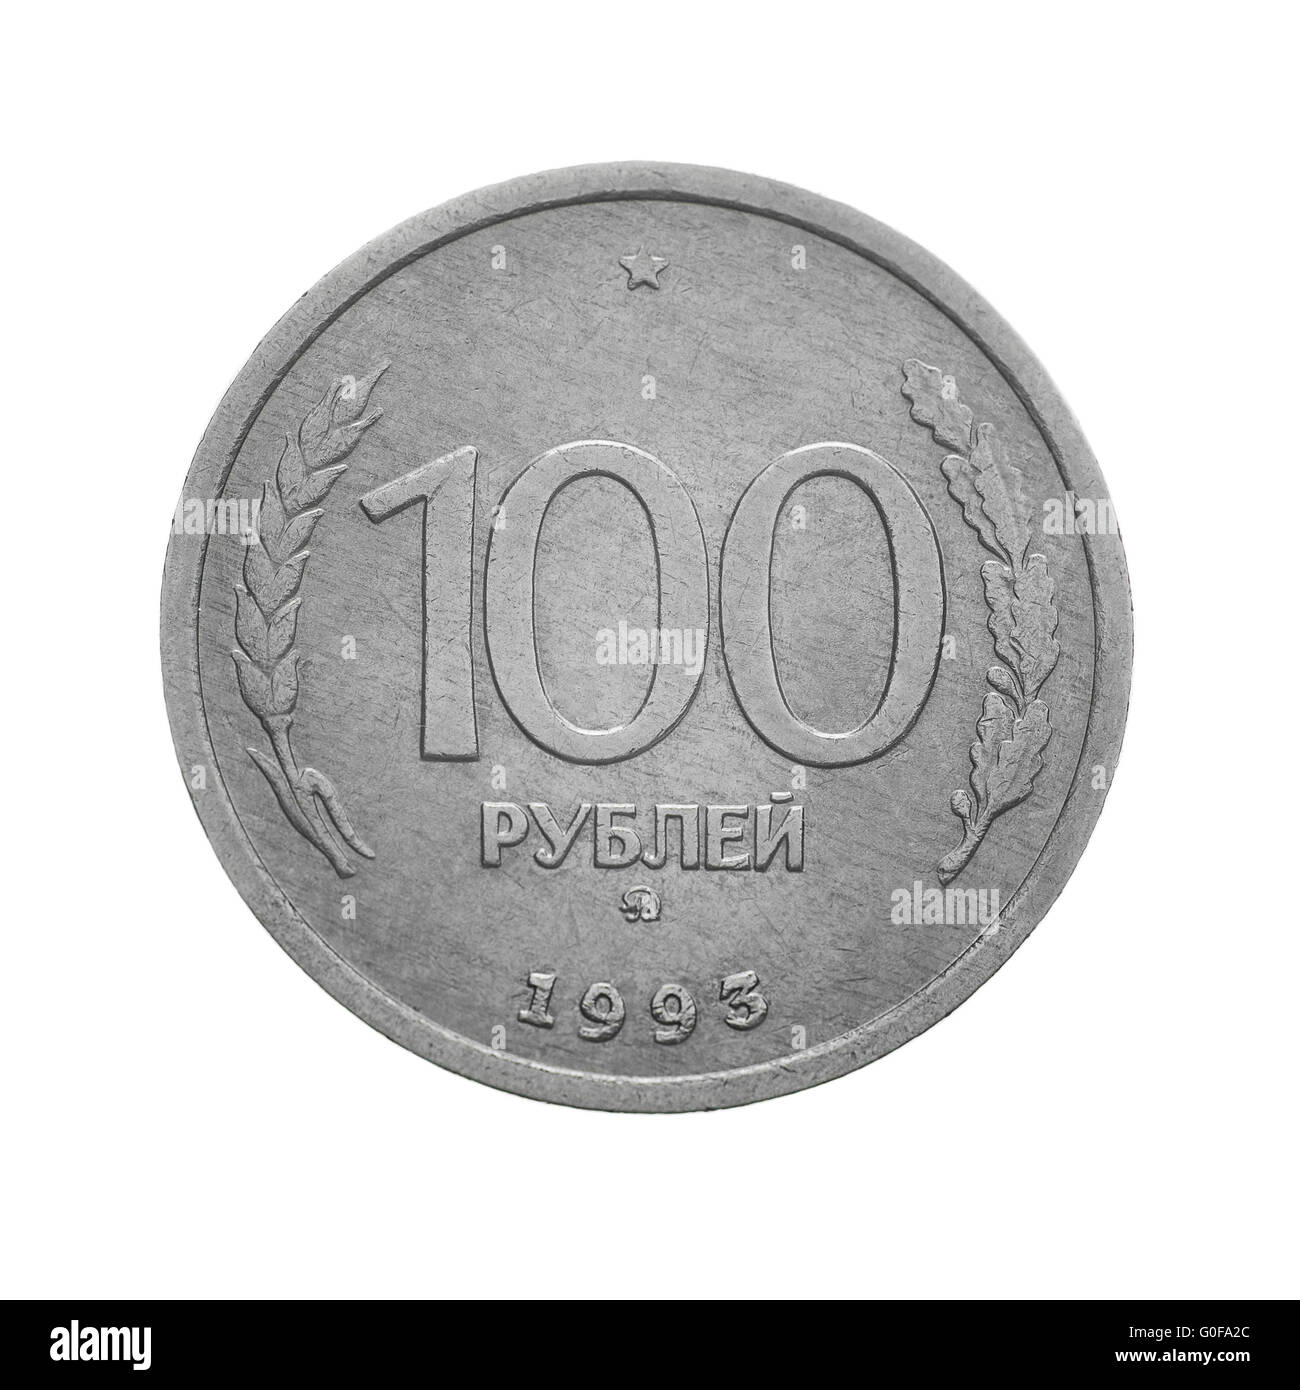 Rus 100 rubl. Бесконечно рублей.